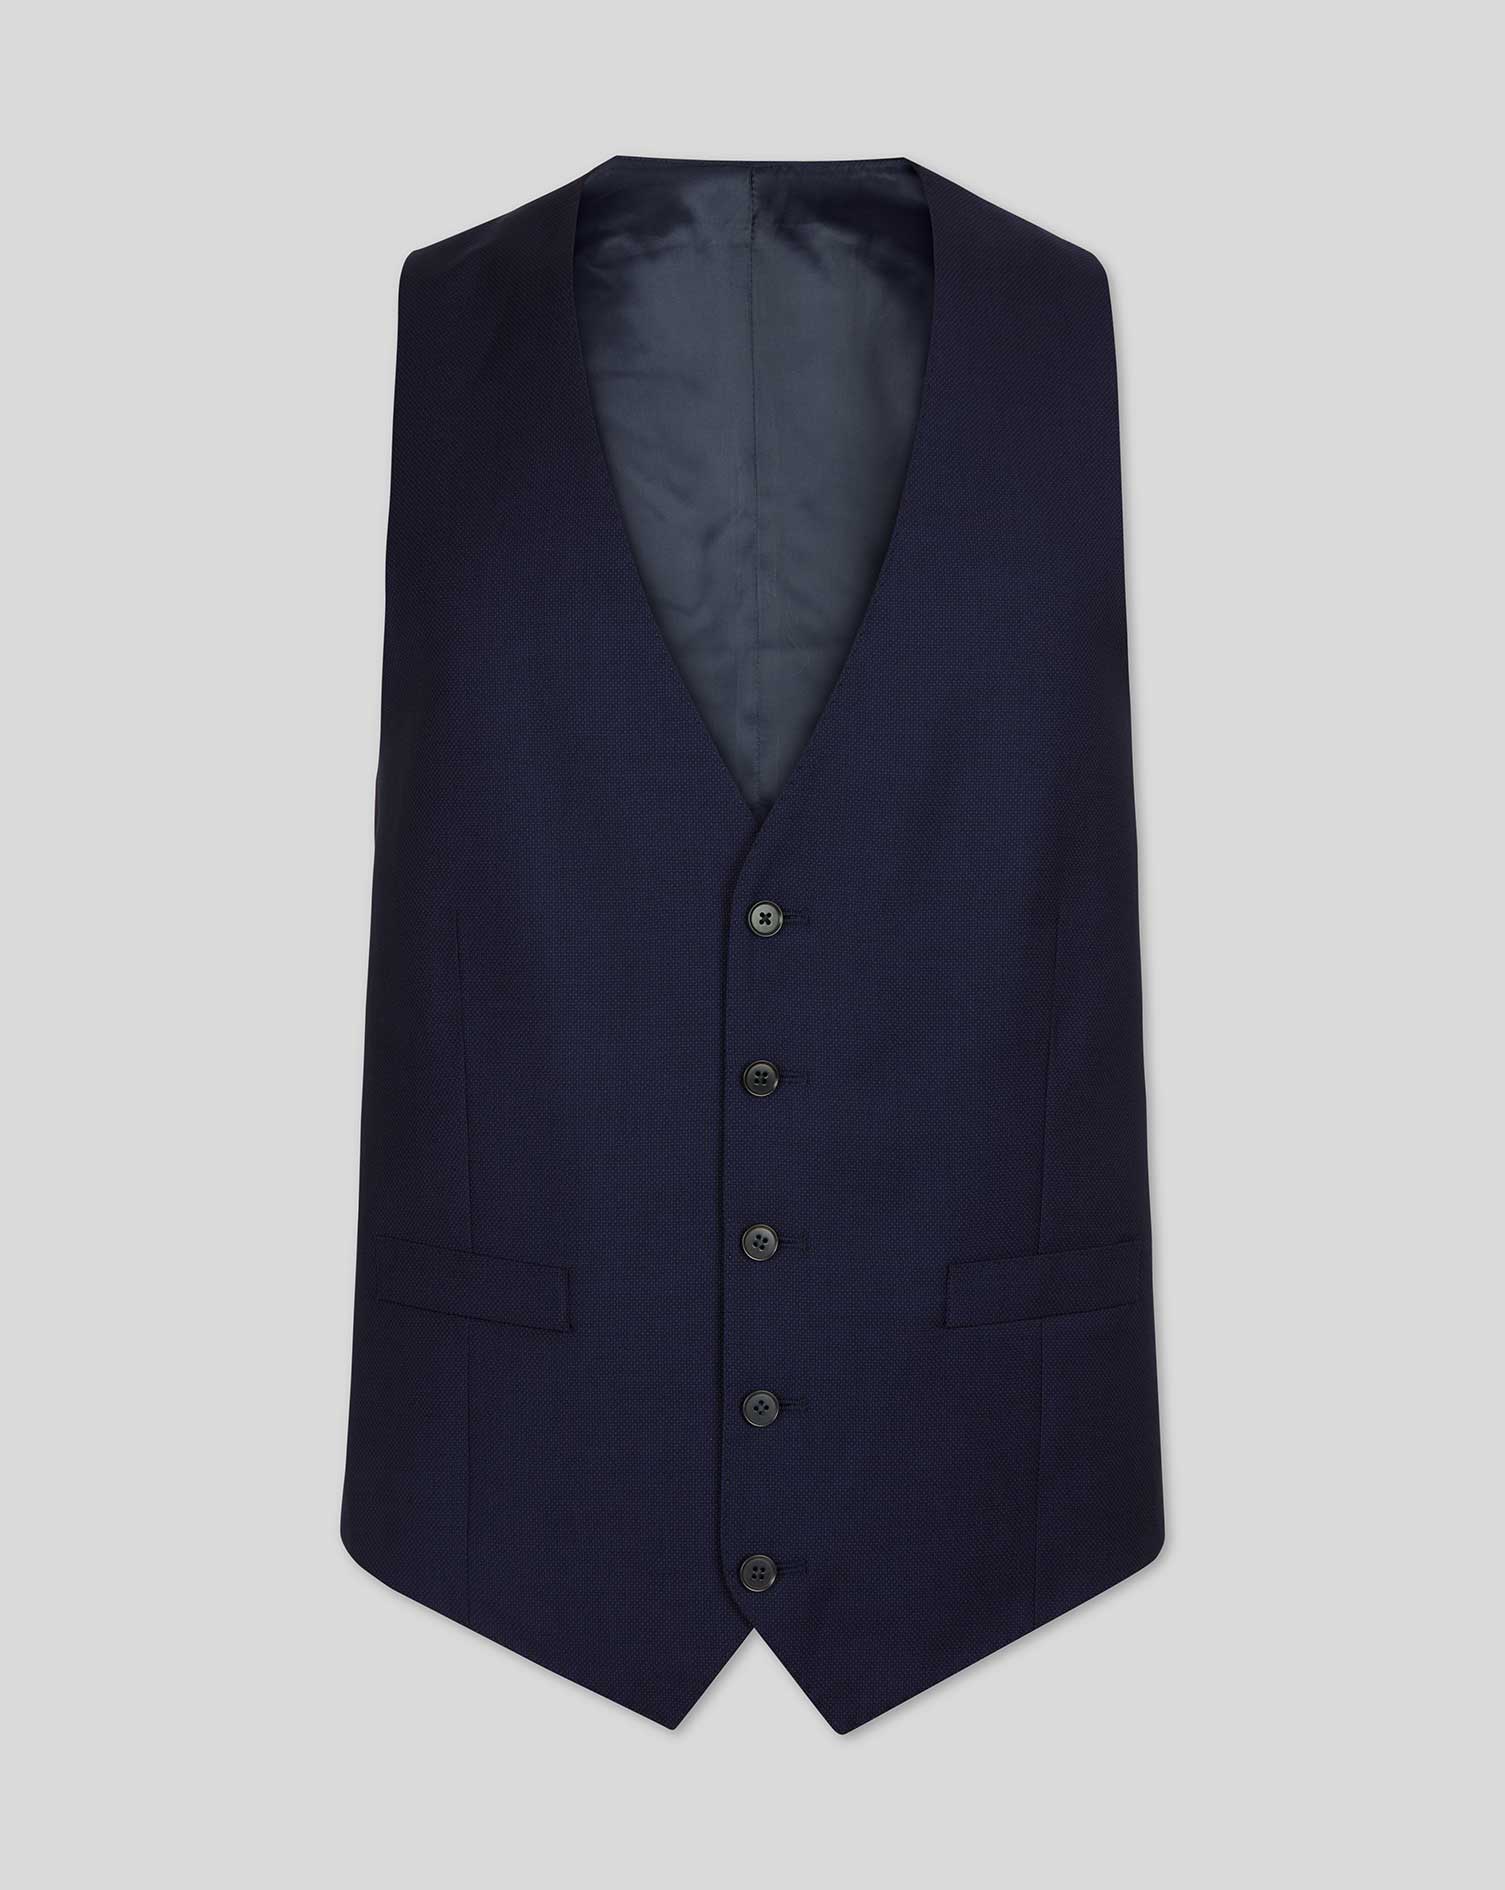 Men's Charles Tyrwhitt Birdseye Travel Suit Waistcoat - Ink Blue Size w44 Wool
